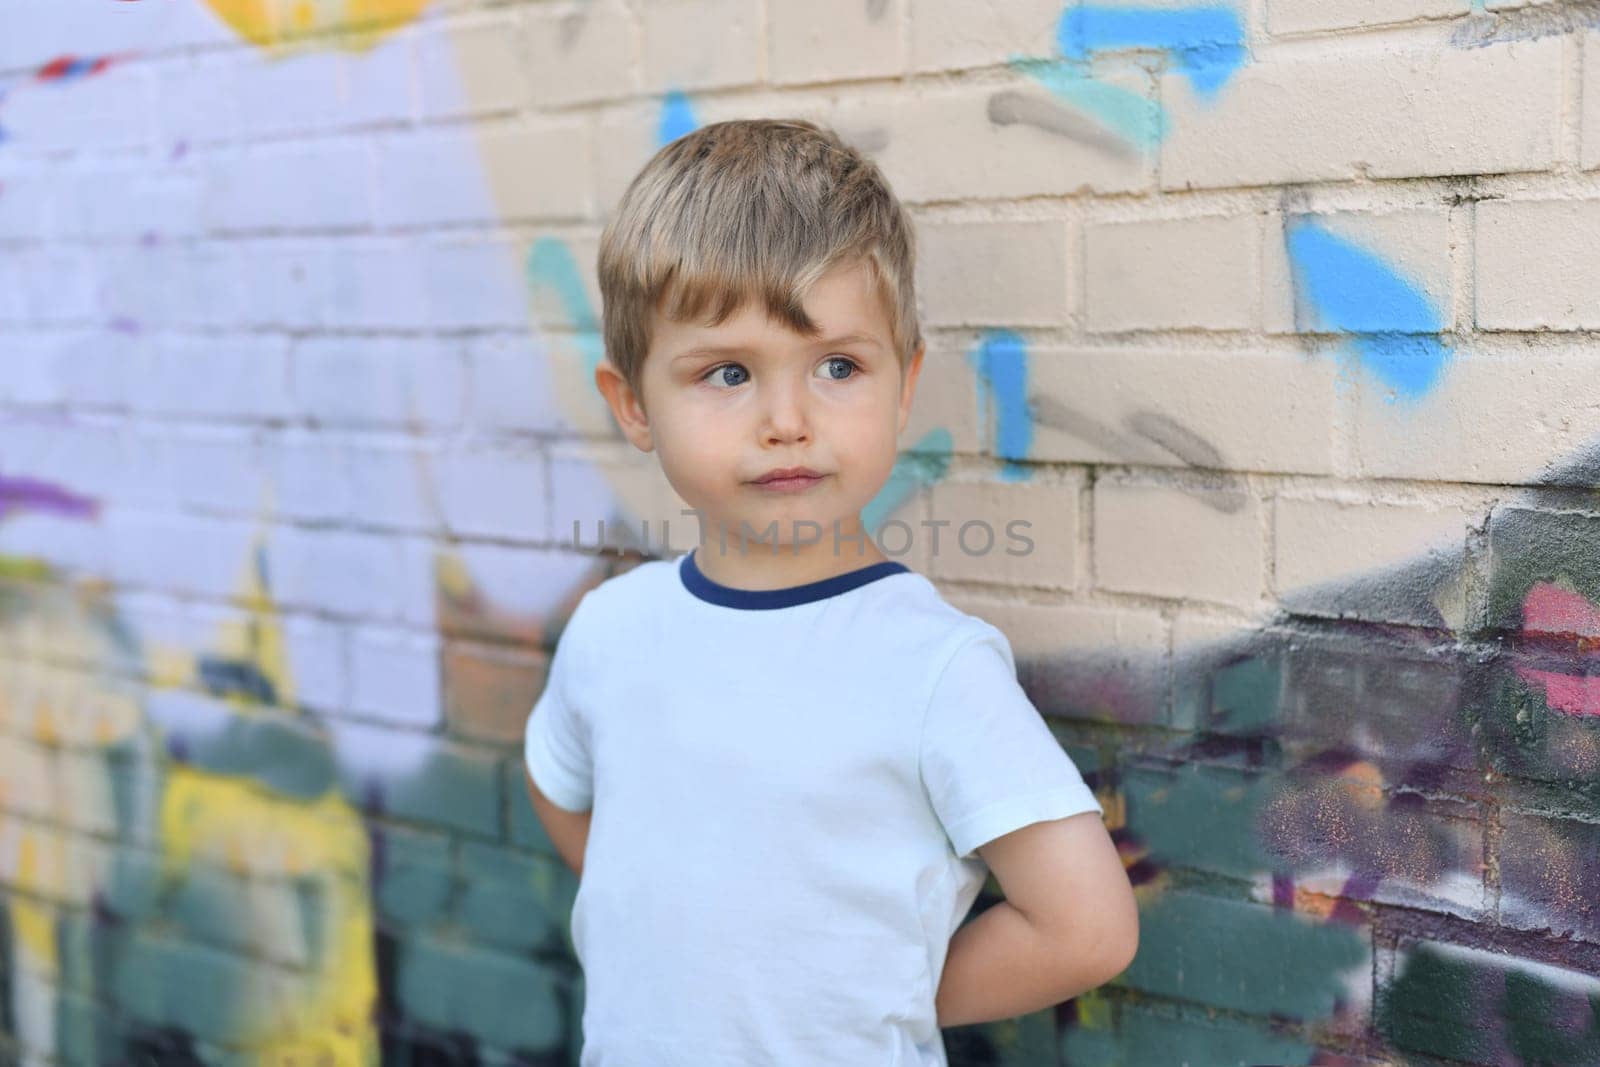 A boy with blue eyes near a colorful wall by Godi